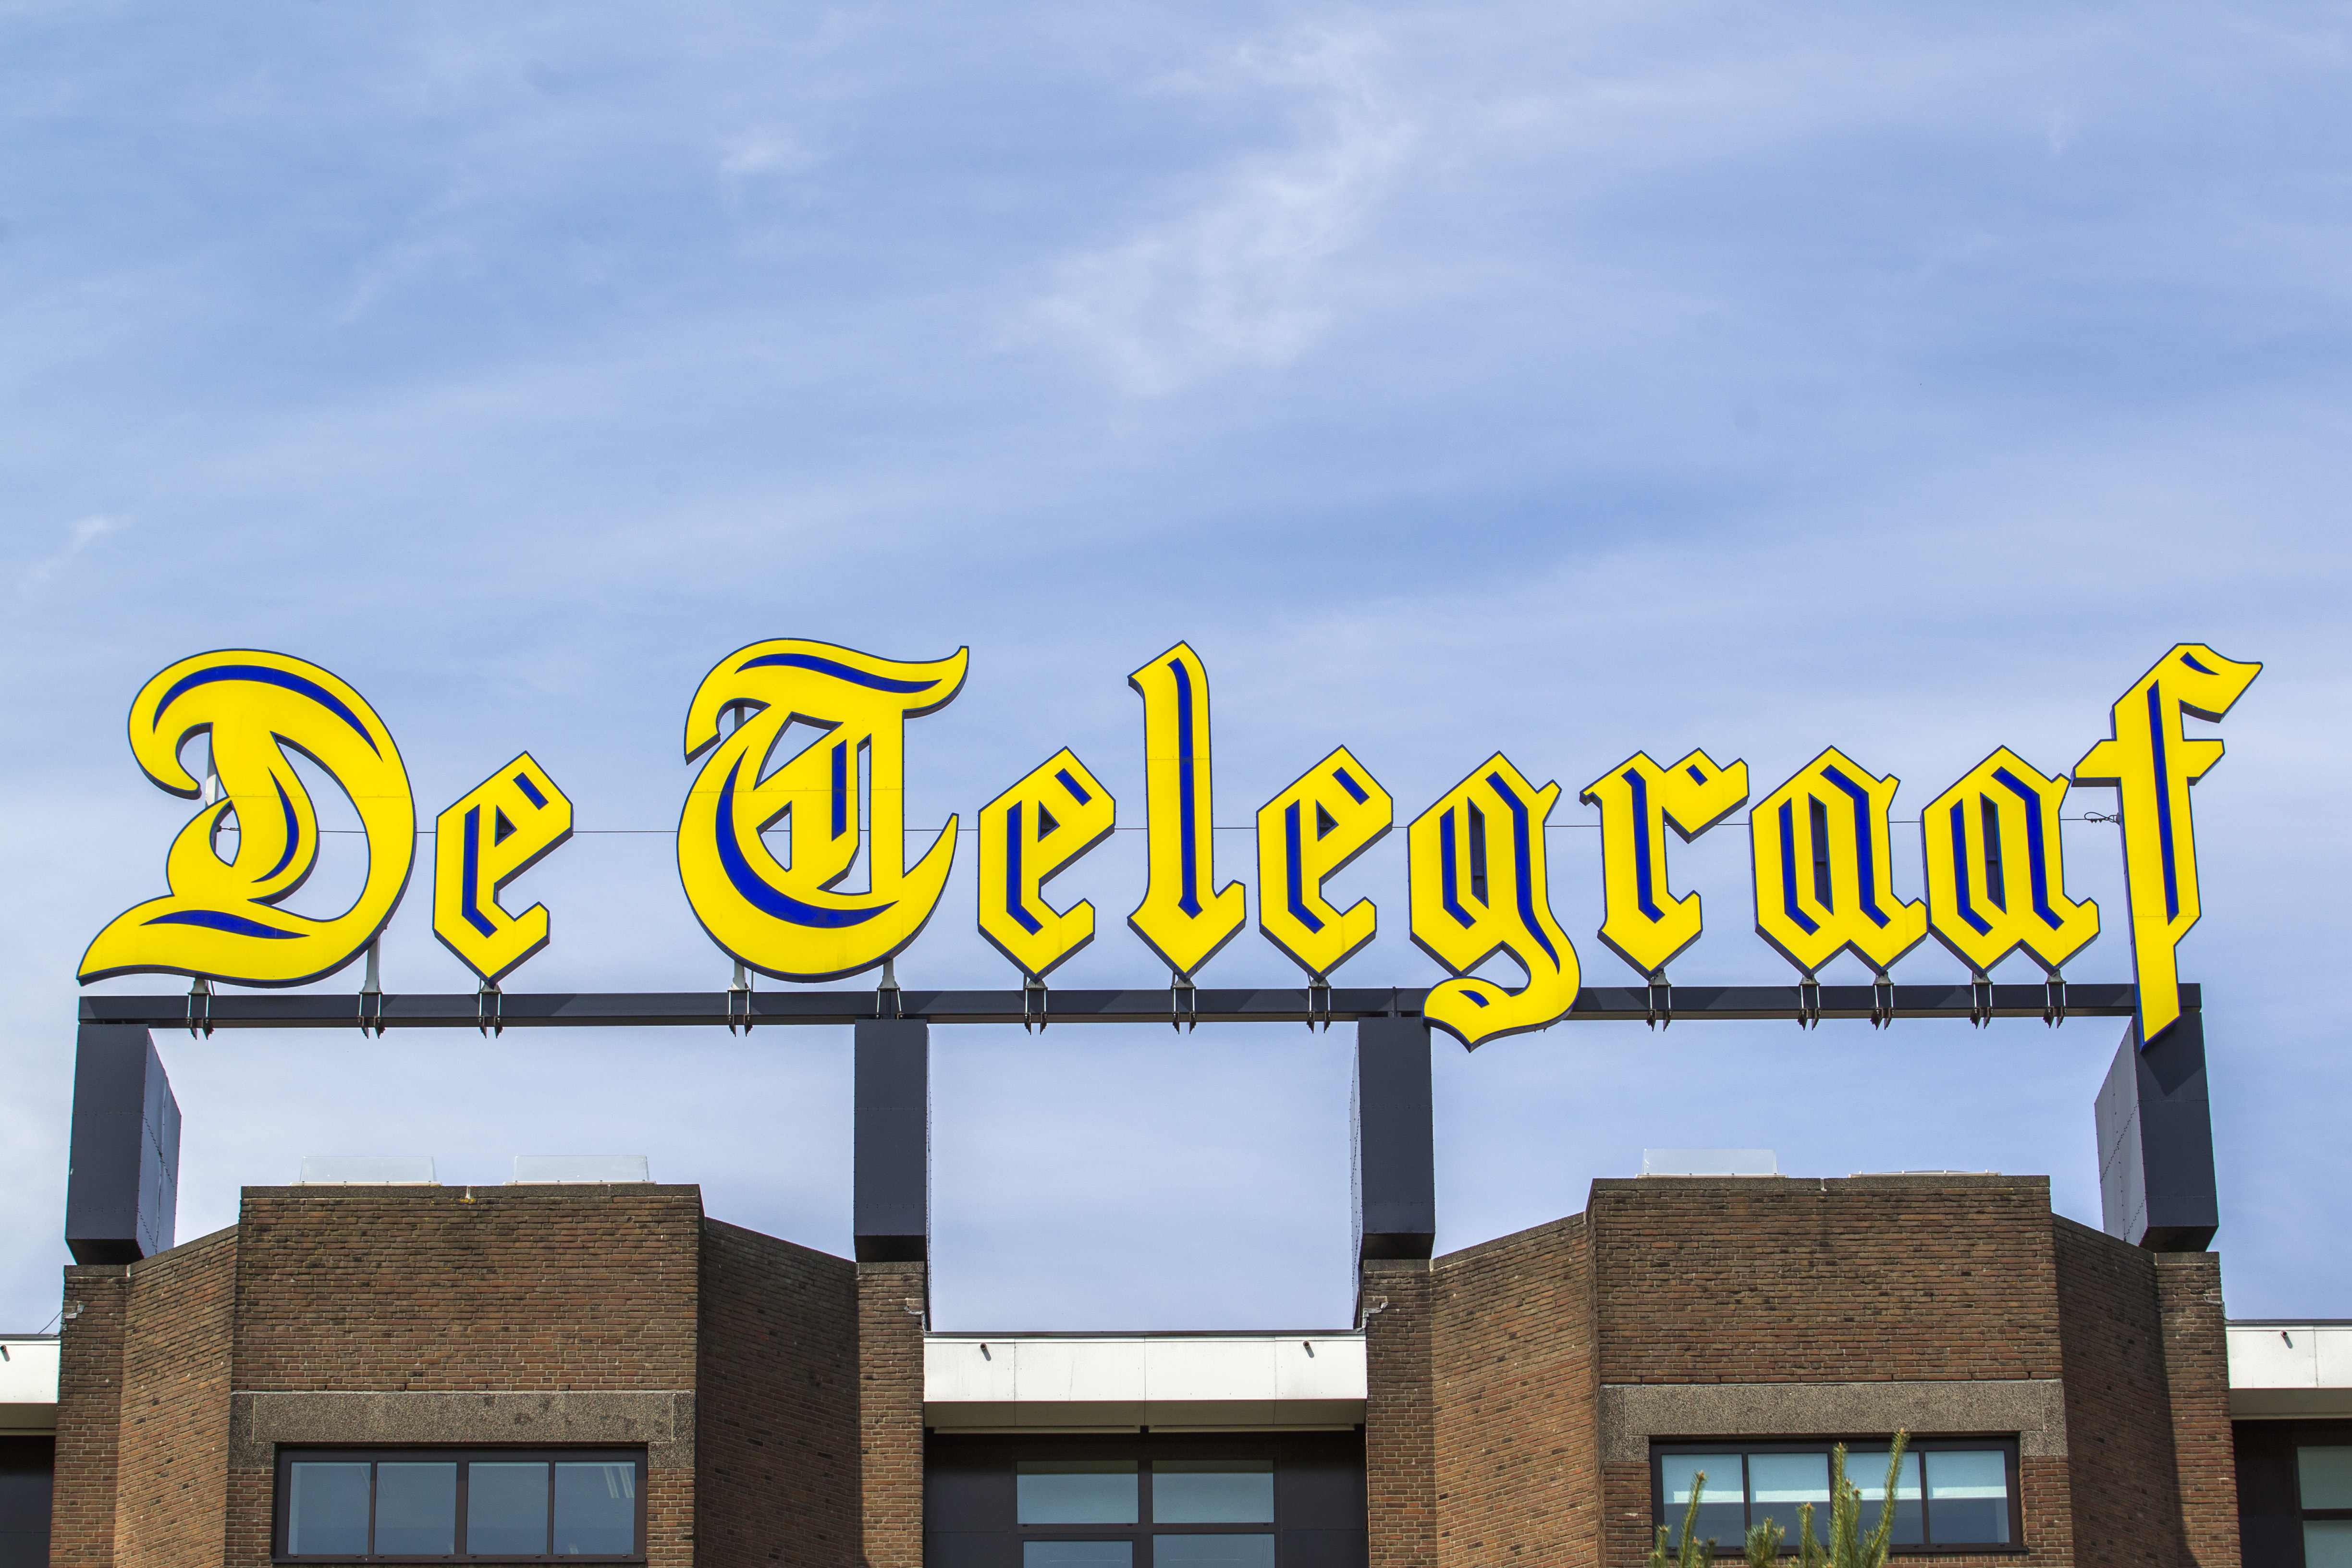 De Vlaamse uitgever Mediahuis heeft plannen om de Telegraaf Media Groep (TMG) over te nemen. Daarmee zouden onder meer De Telegraaf, Metro en het Noordhollands Dagblad in Belgische handen komen.